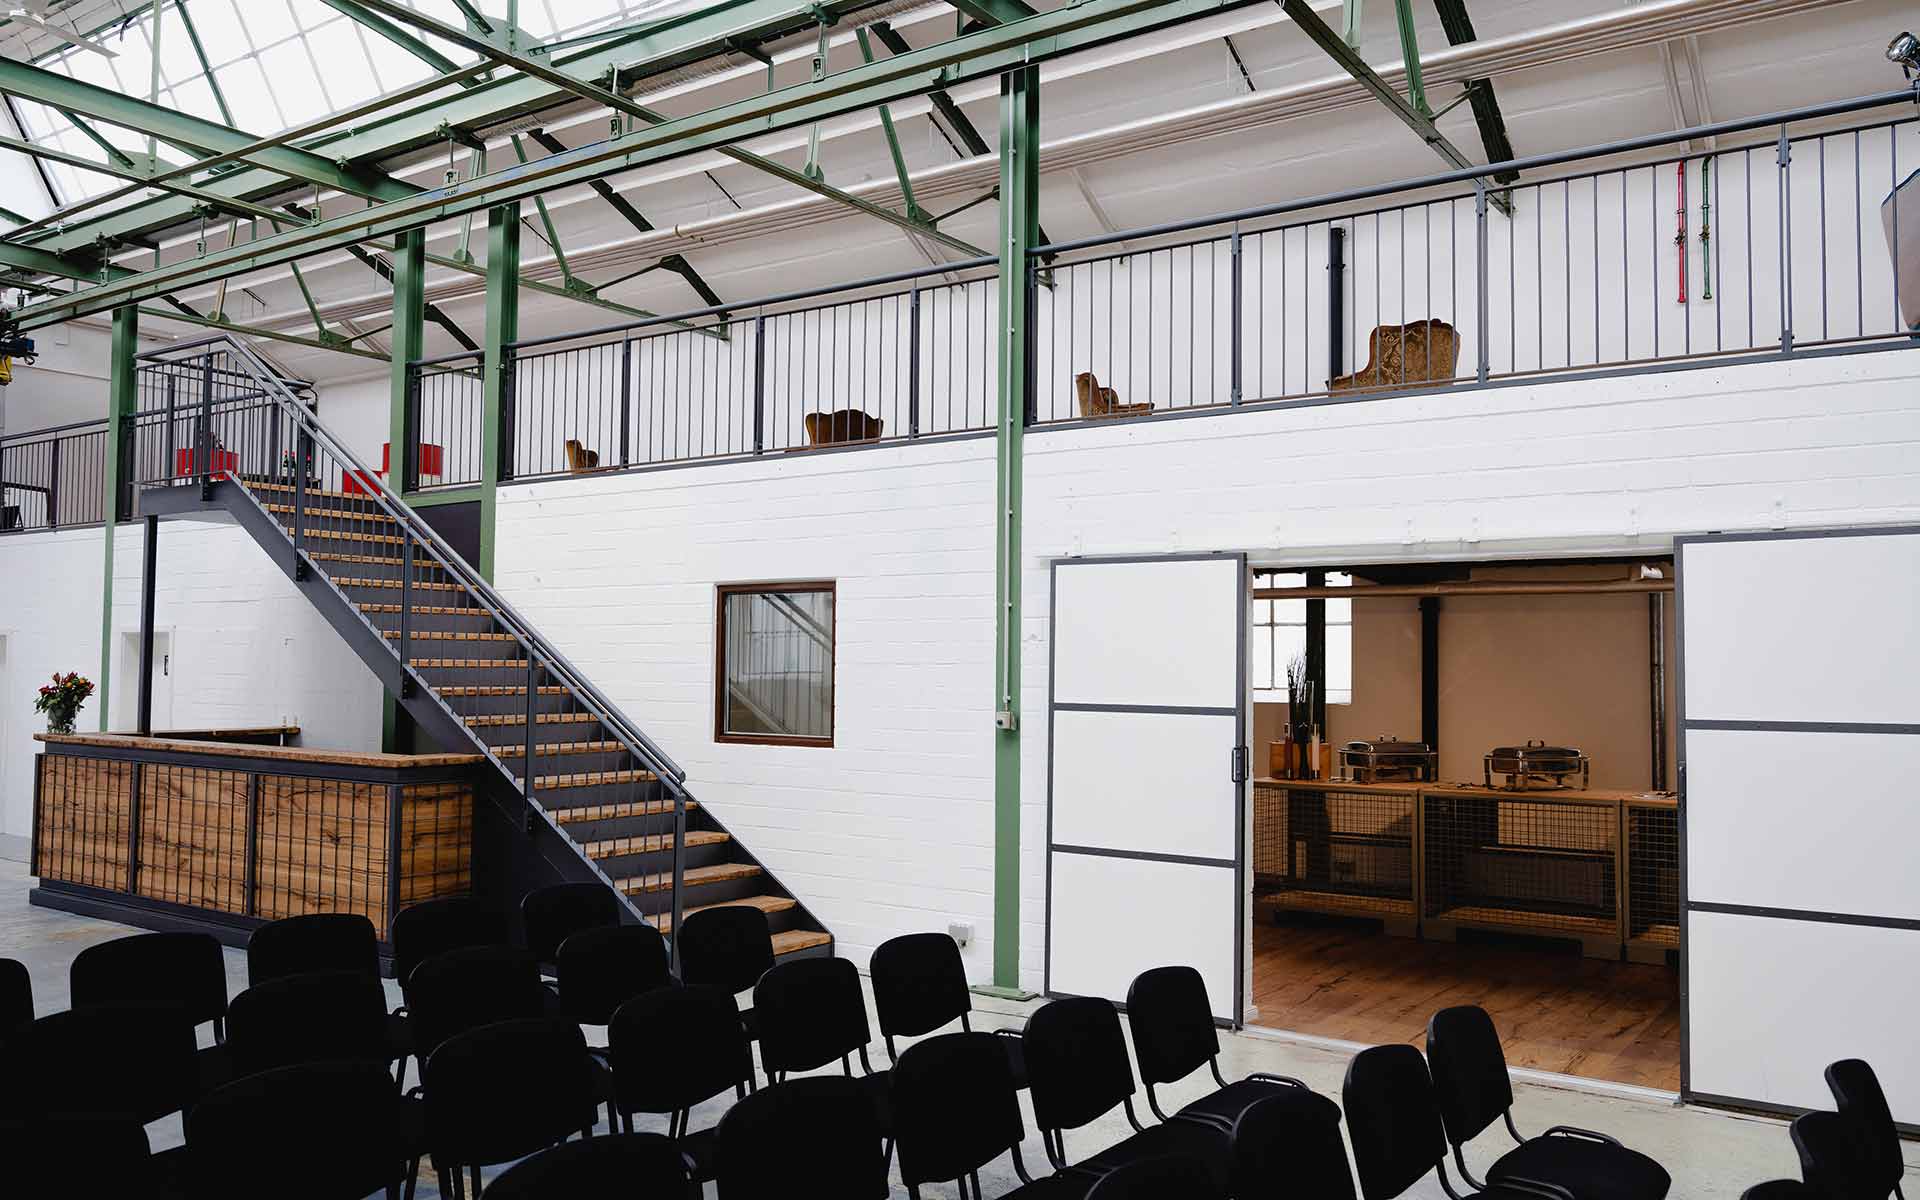 Ein Veranstaltungsort für Verkaufskonferenzen mit einem geräumigen Raum voller Stühle und einer Treppe.